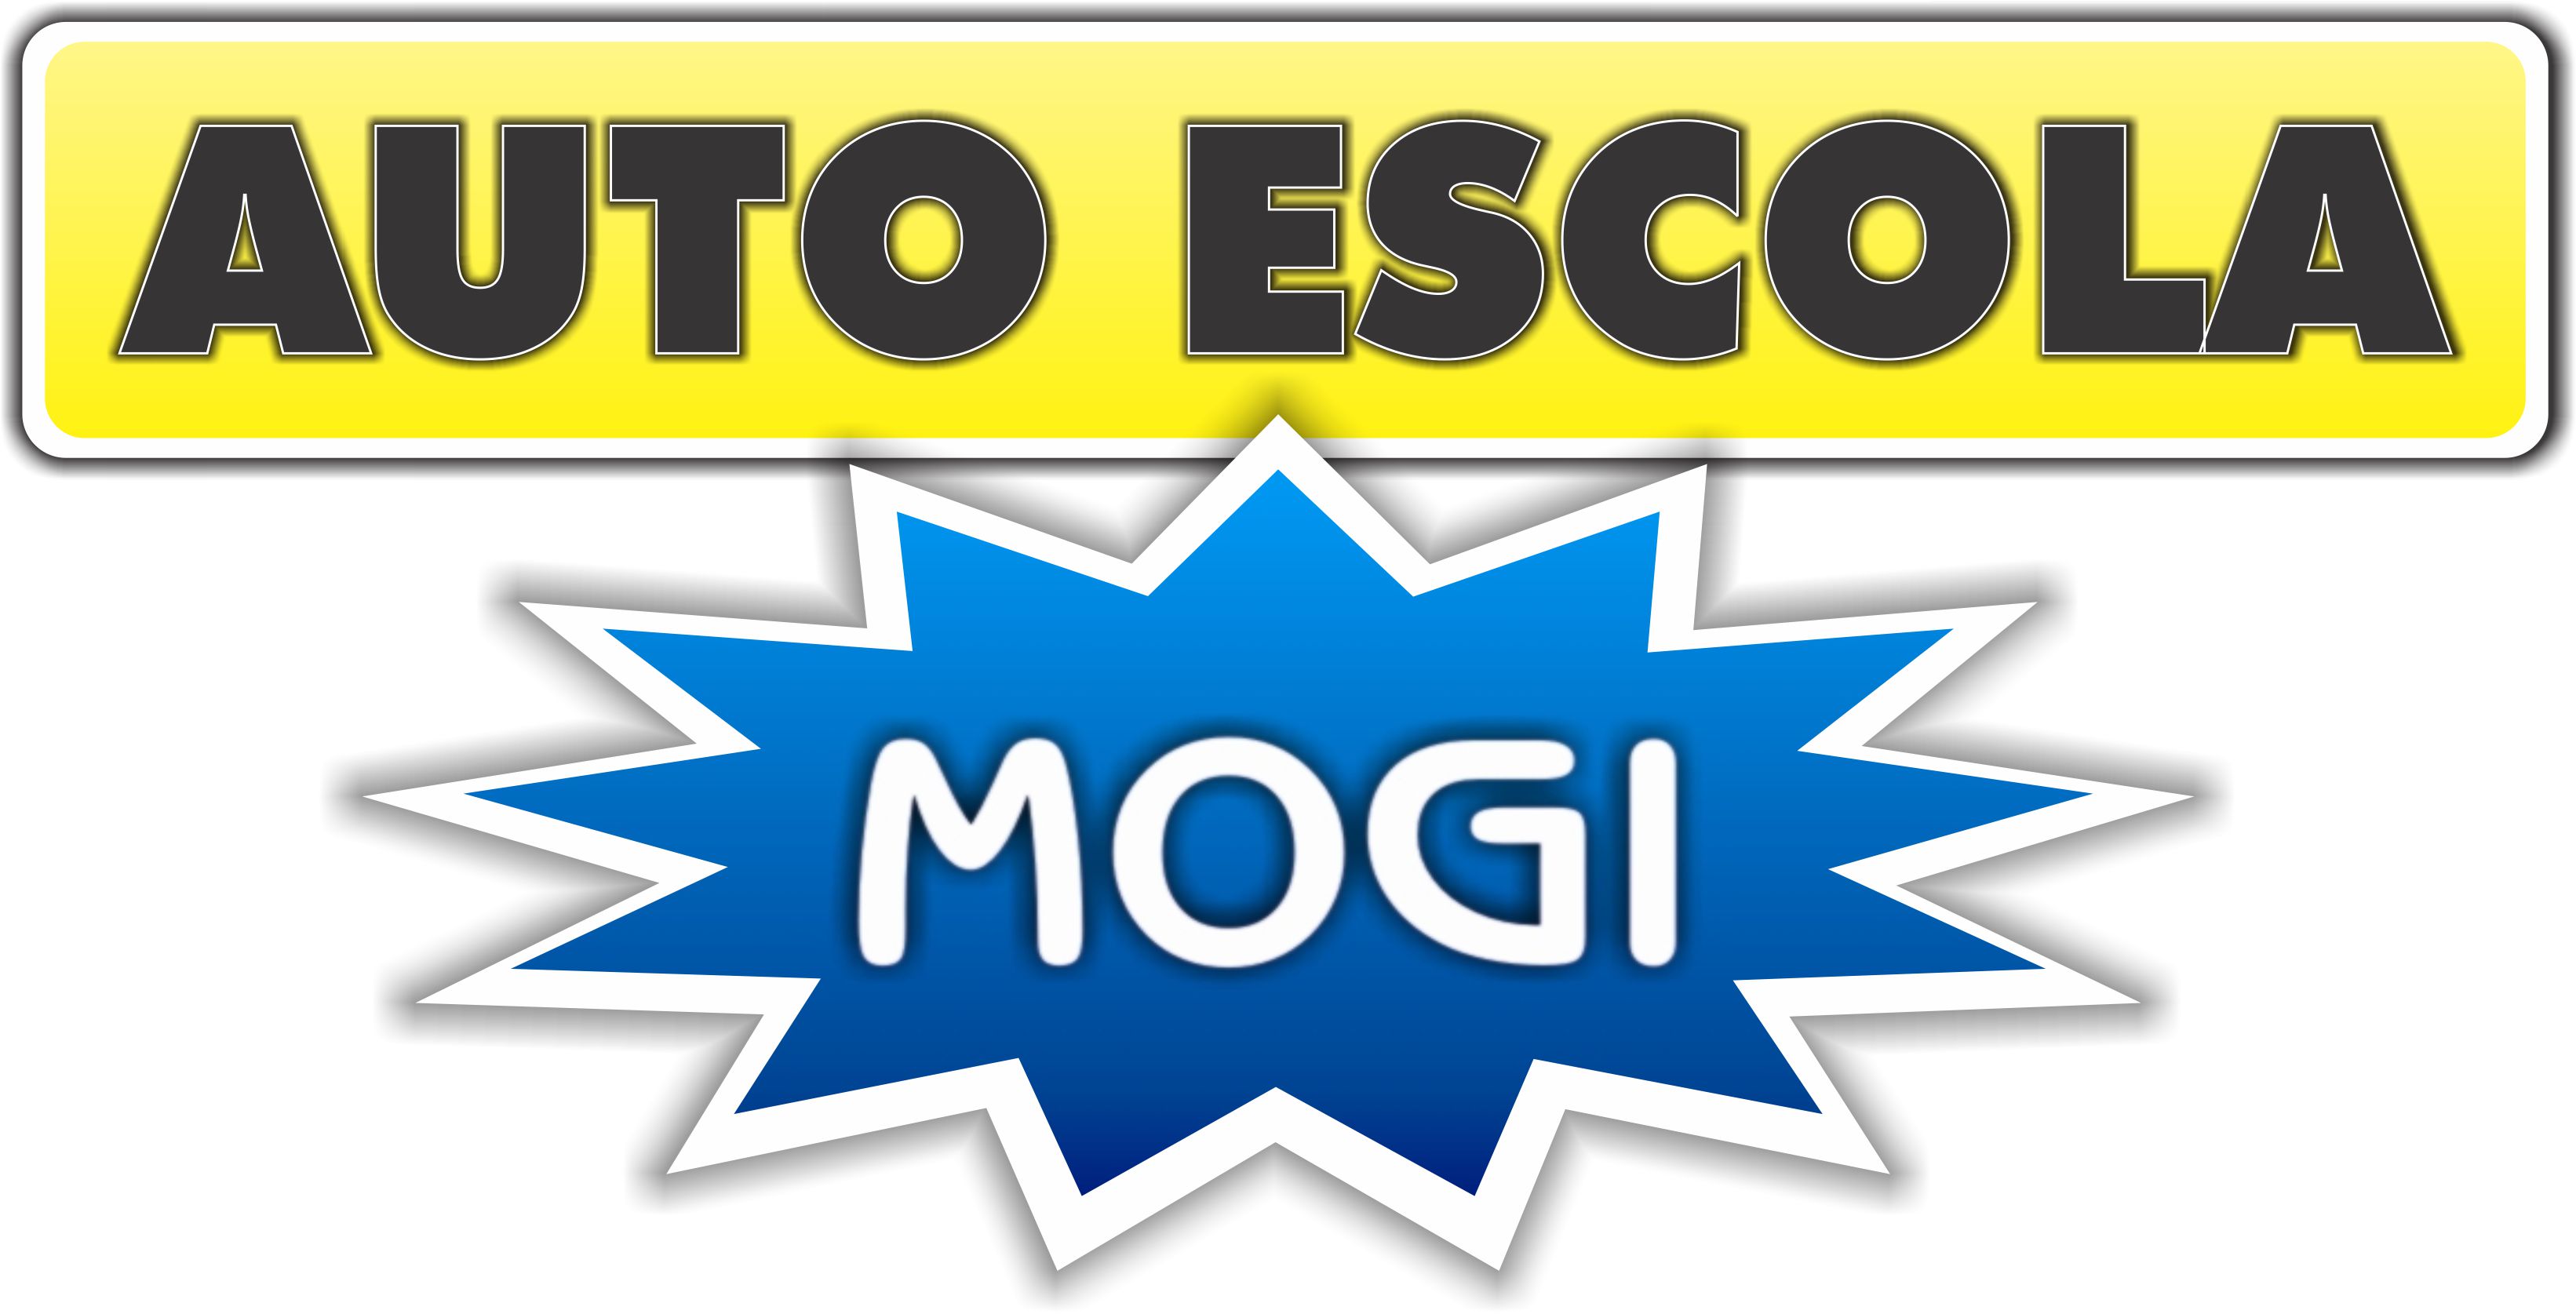 AutoEscola Mogi - Site Expresso - Entre em contato agora.